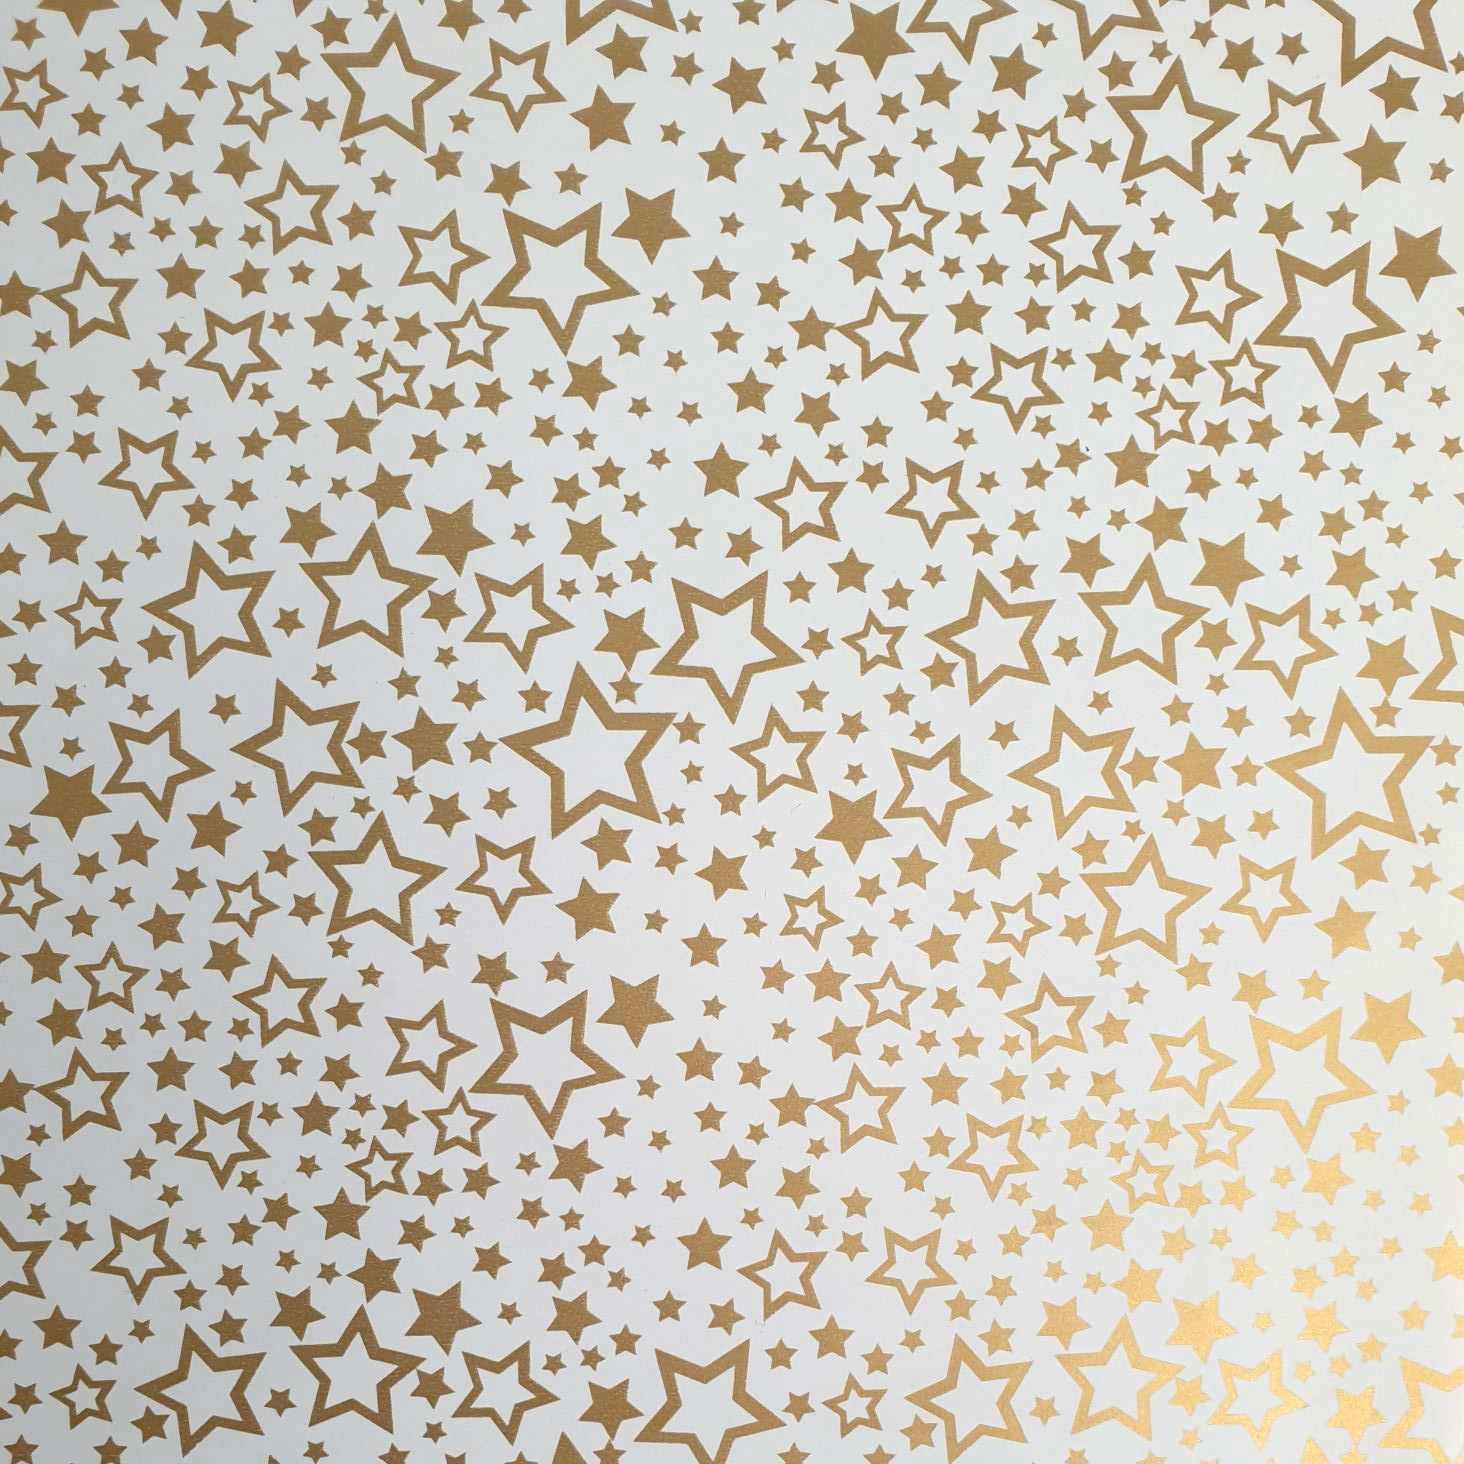 Star Geschenkpapier, Geschenkpapier Sterne Muster Rolle / gold weiß 2m 70cm x